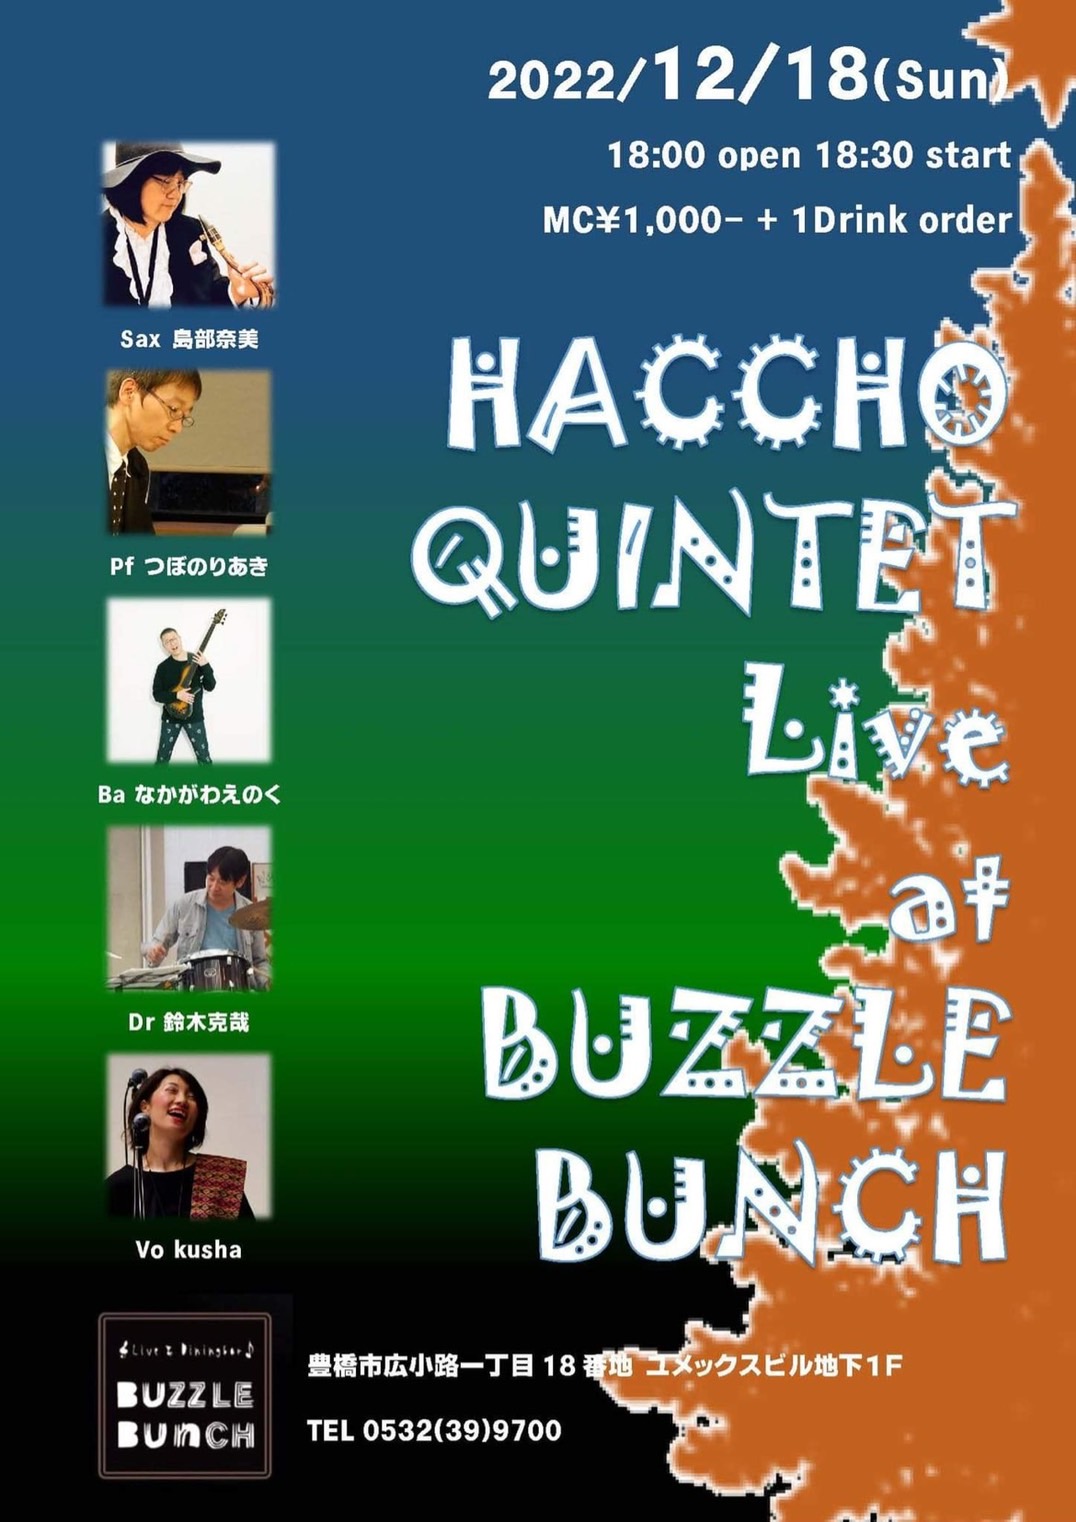 2022年12月18日(日) HACCHO QUINTET Live at BUZZLE BUNCH